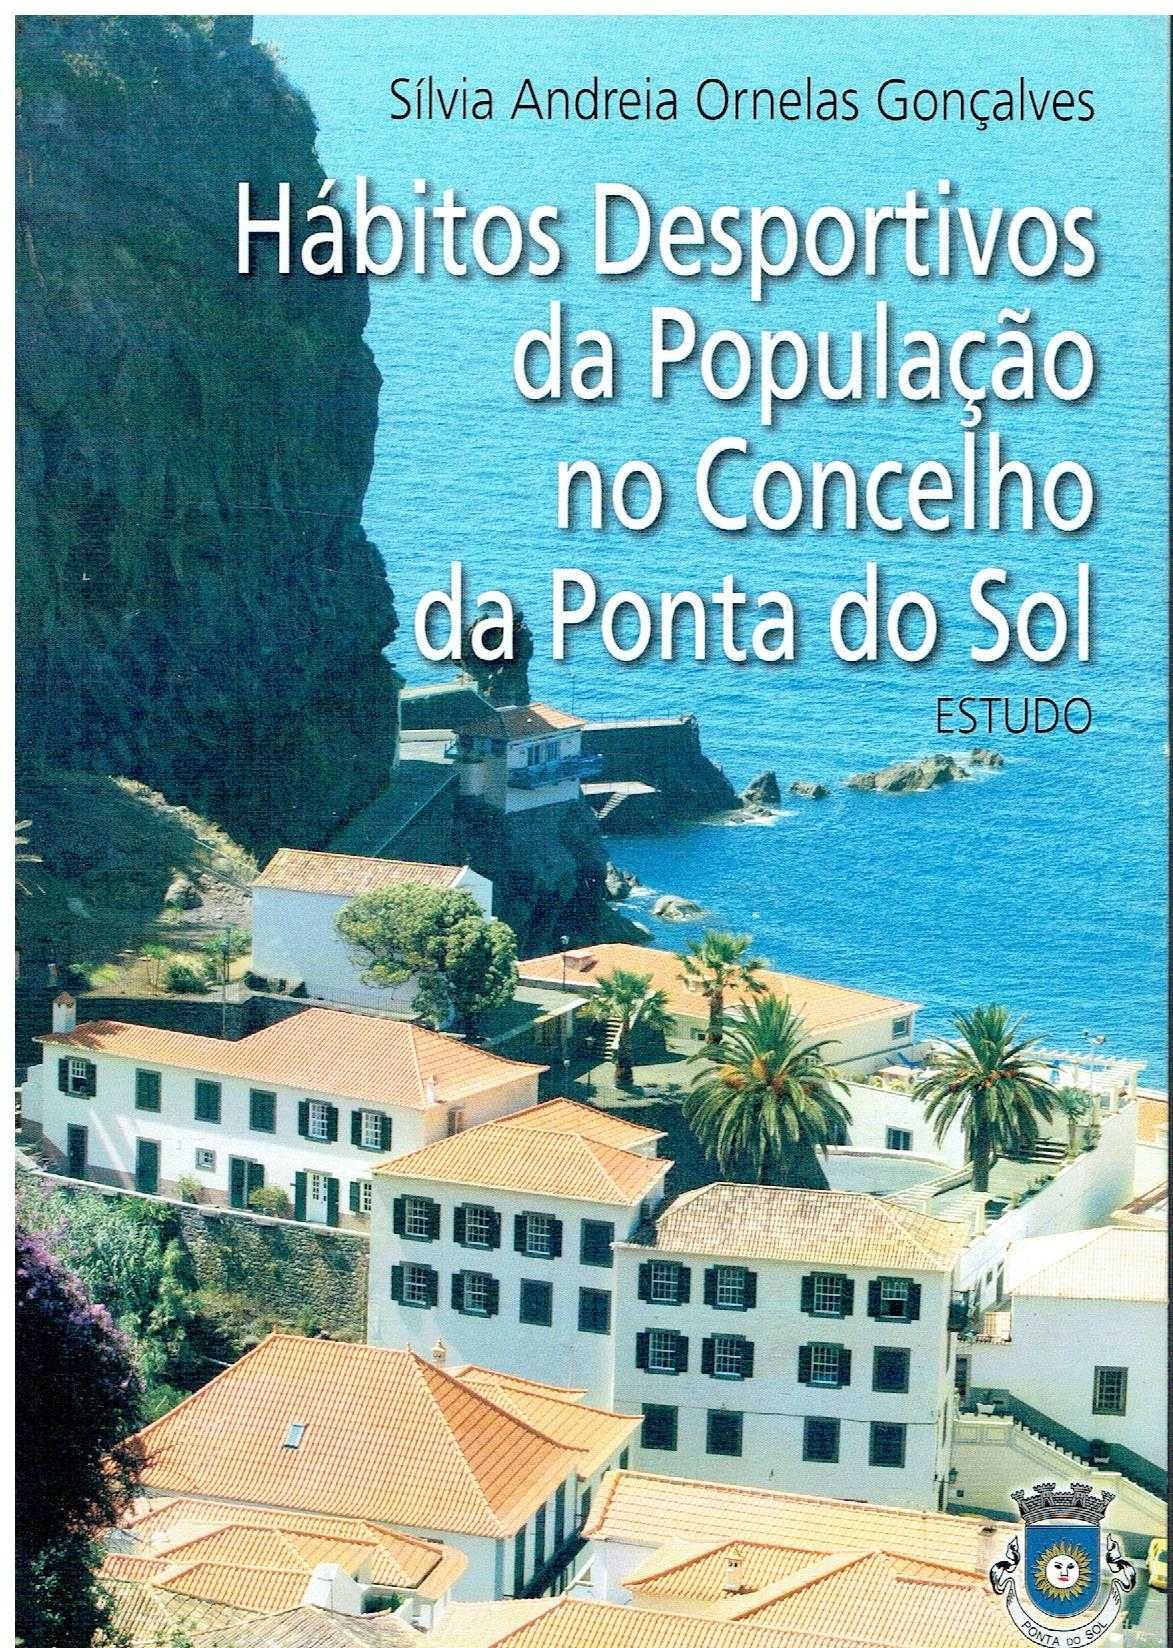 2145
	
Hábitos desportivos da população no concelho da Ponta do Sol